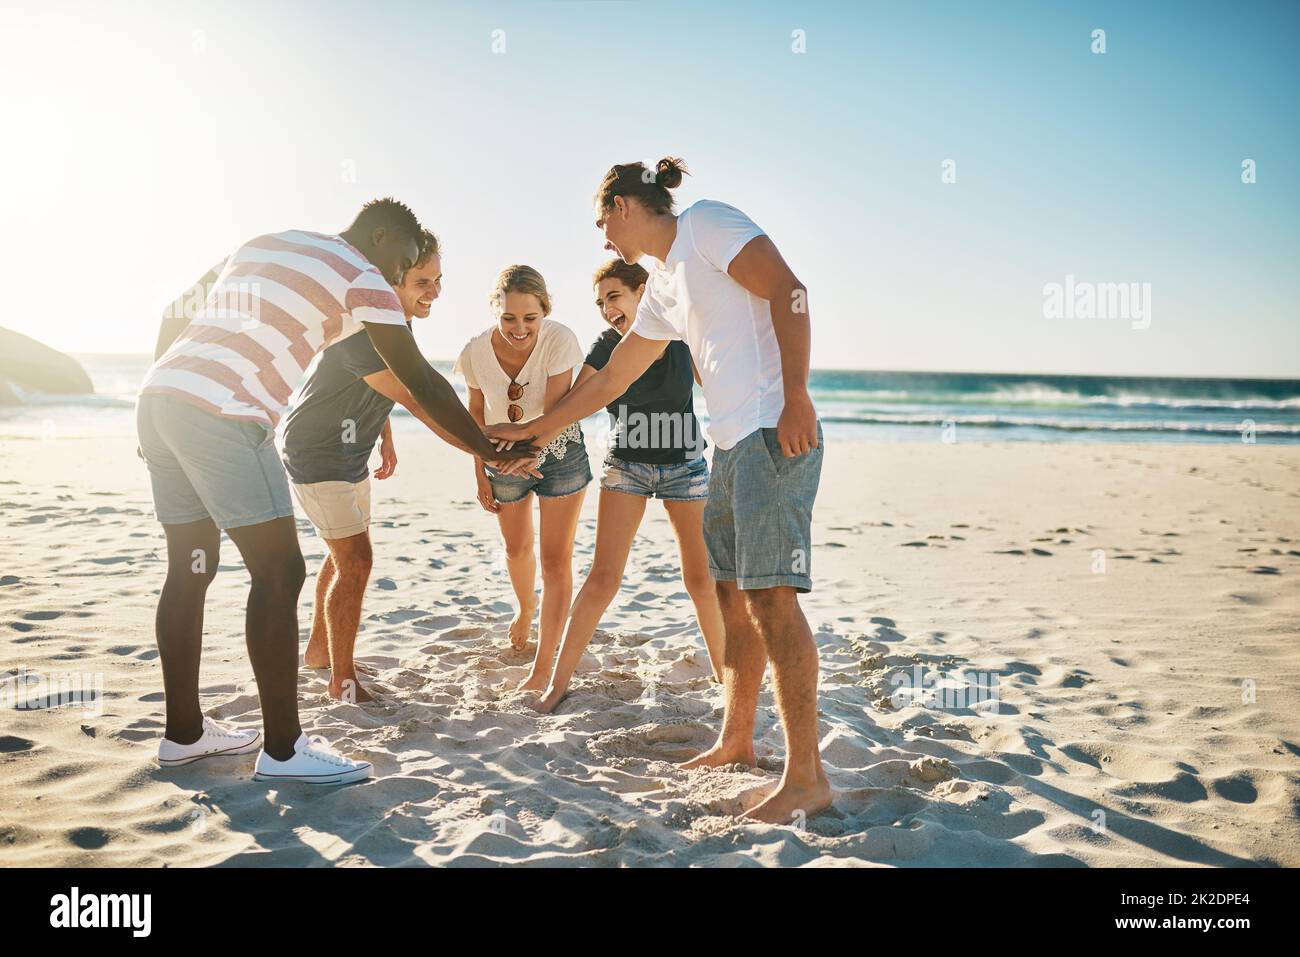 Versprechen Sie sich, diesen Sommer zum besten zu machen. Aufnahme einer Gruppe junger Menschen, die sich solidarisch am Strand zusammenschließen. Stockfoto